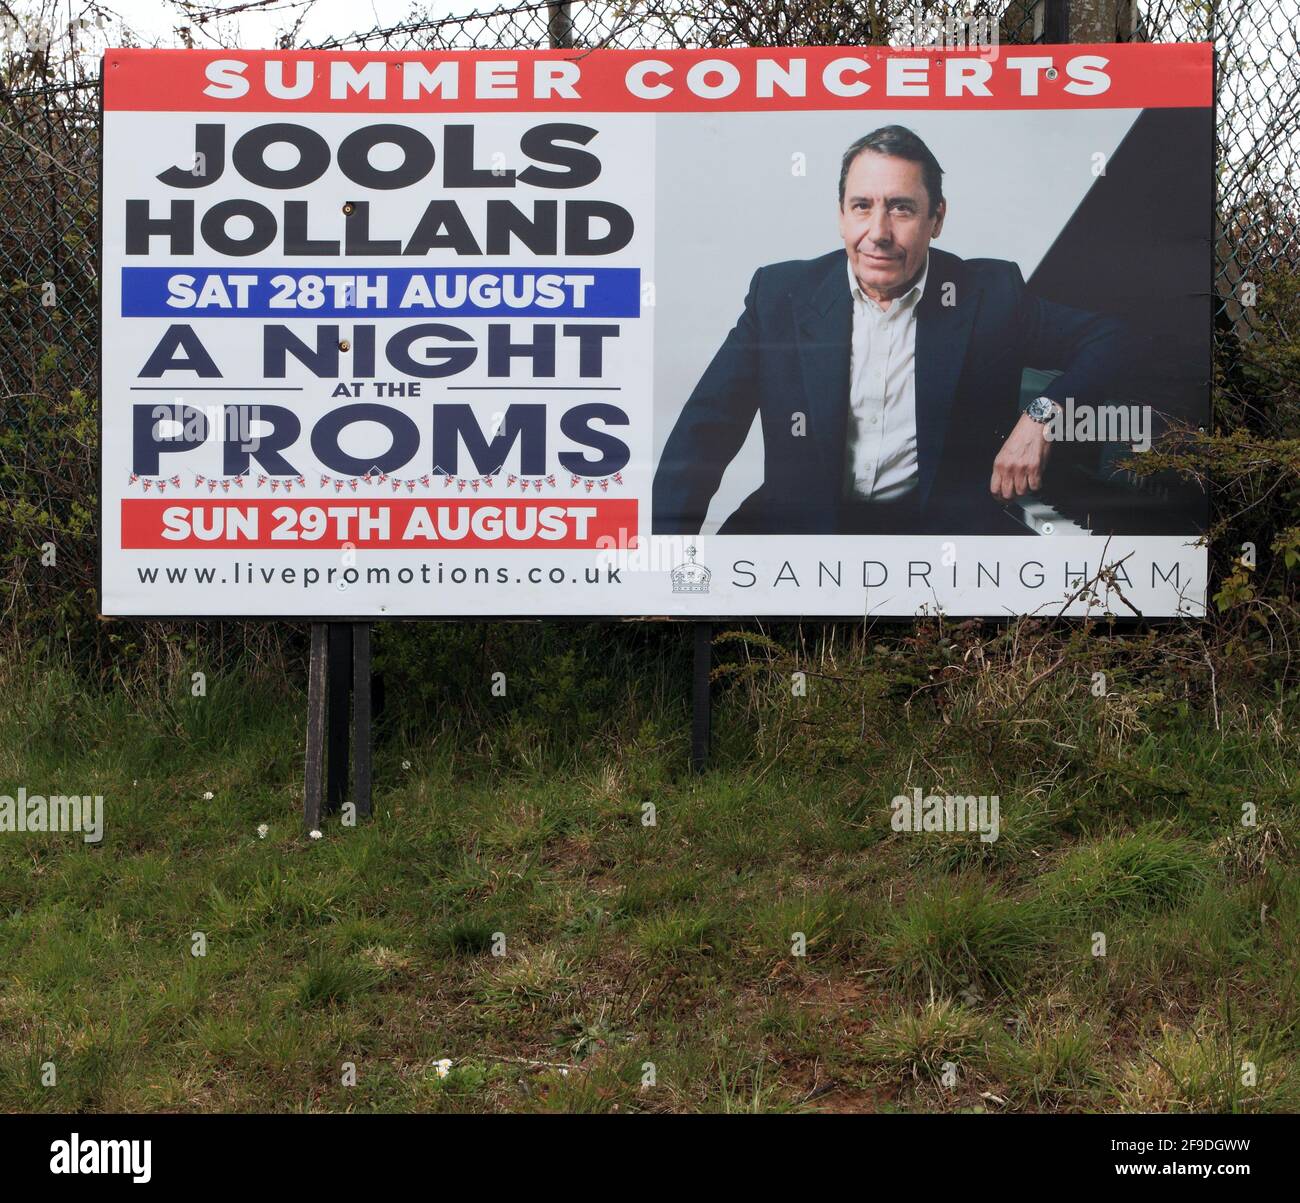 Jools Holland, concierto de verano de 2021, carretera, publicidad, cartel, North Norfolk, Inglaterra Foto de stock